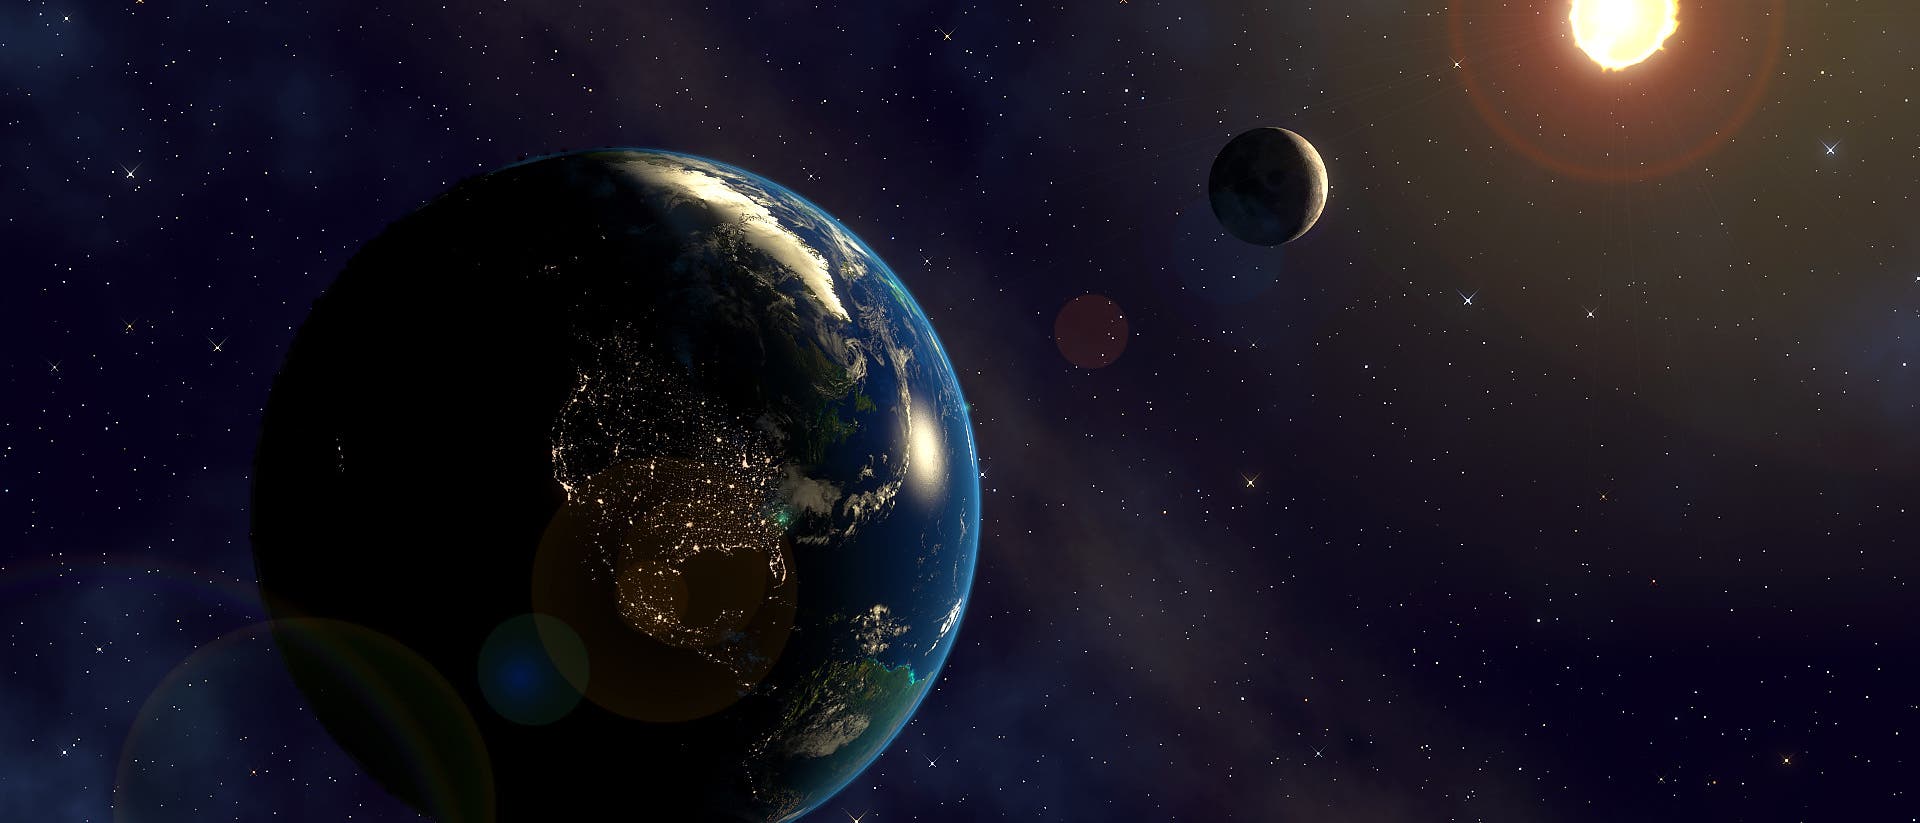 Erde-Mond-System mit Sonne